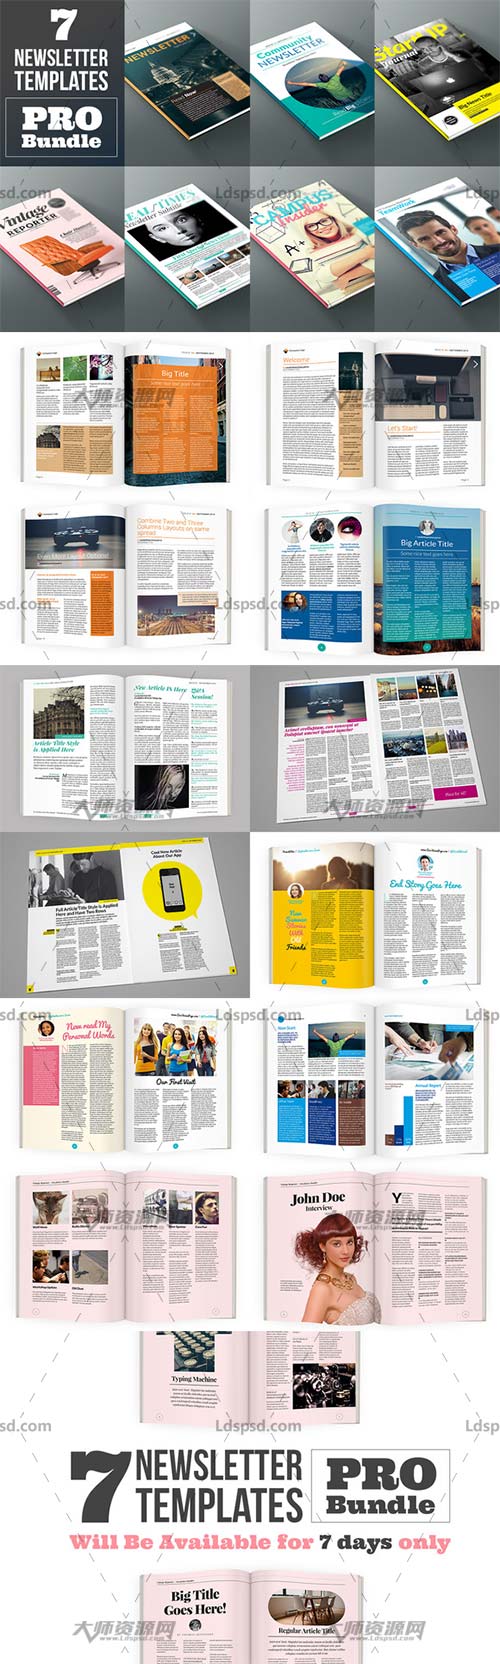 Newsletter Pro Bundle,indesign模板－时事周刊(7套)